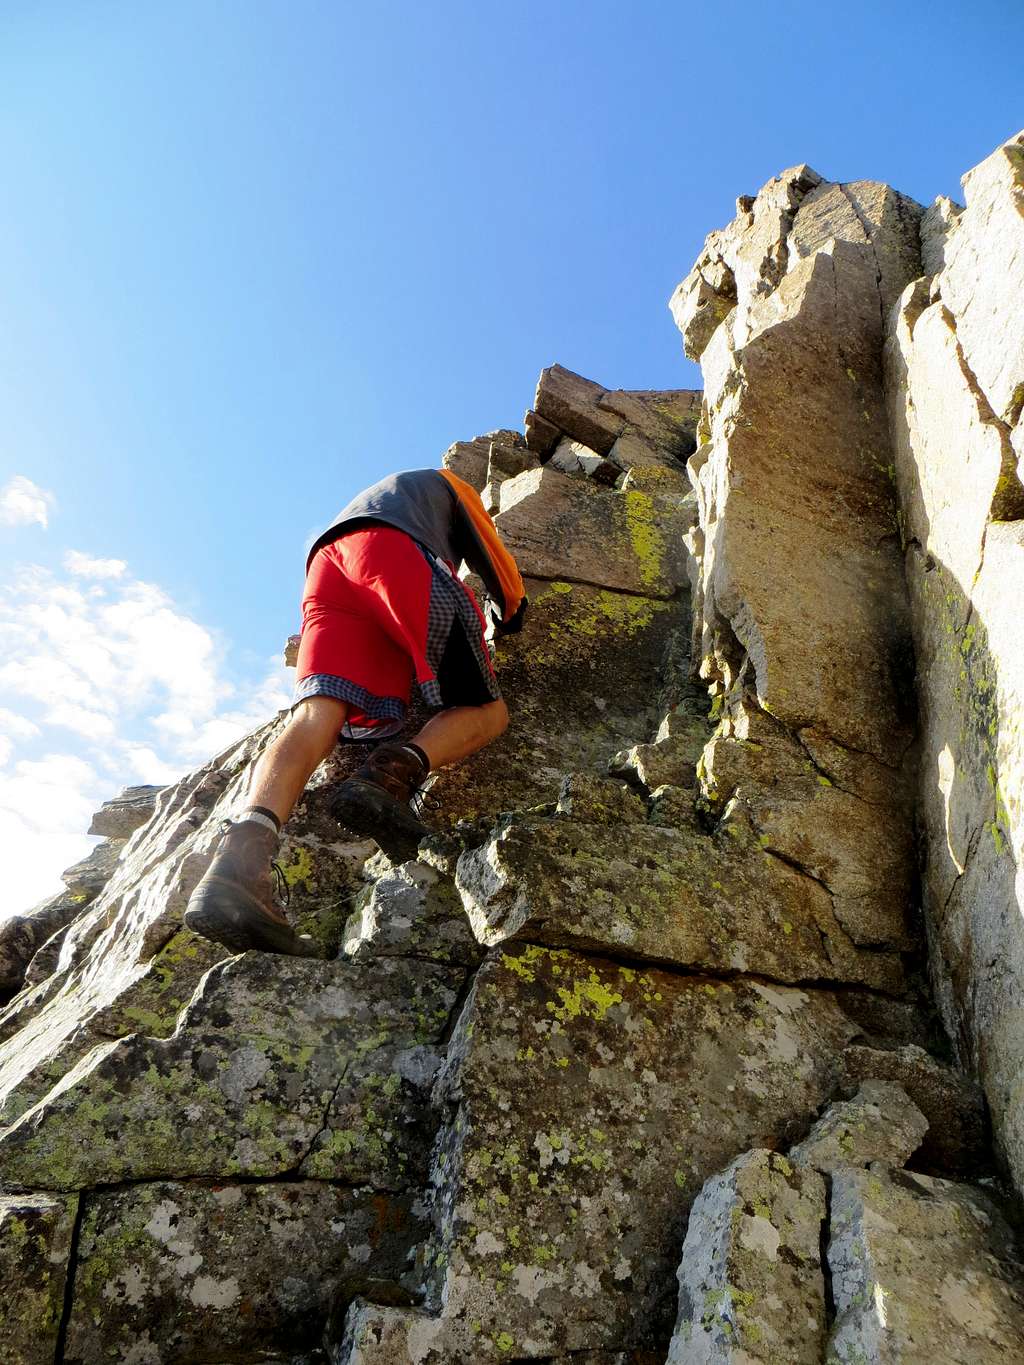 Matt climbing up the crux on the ridge